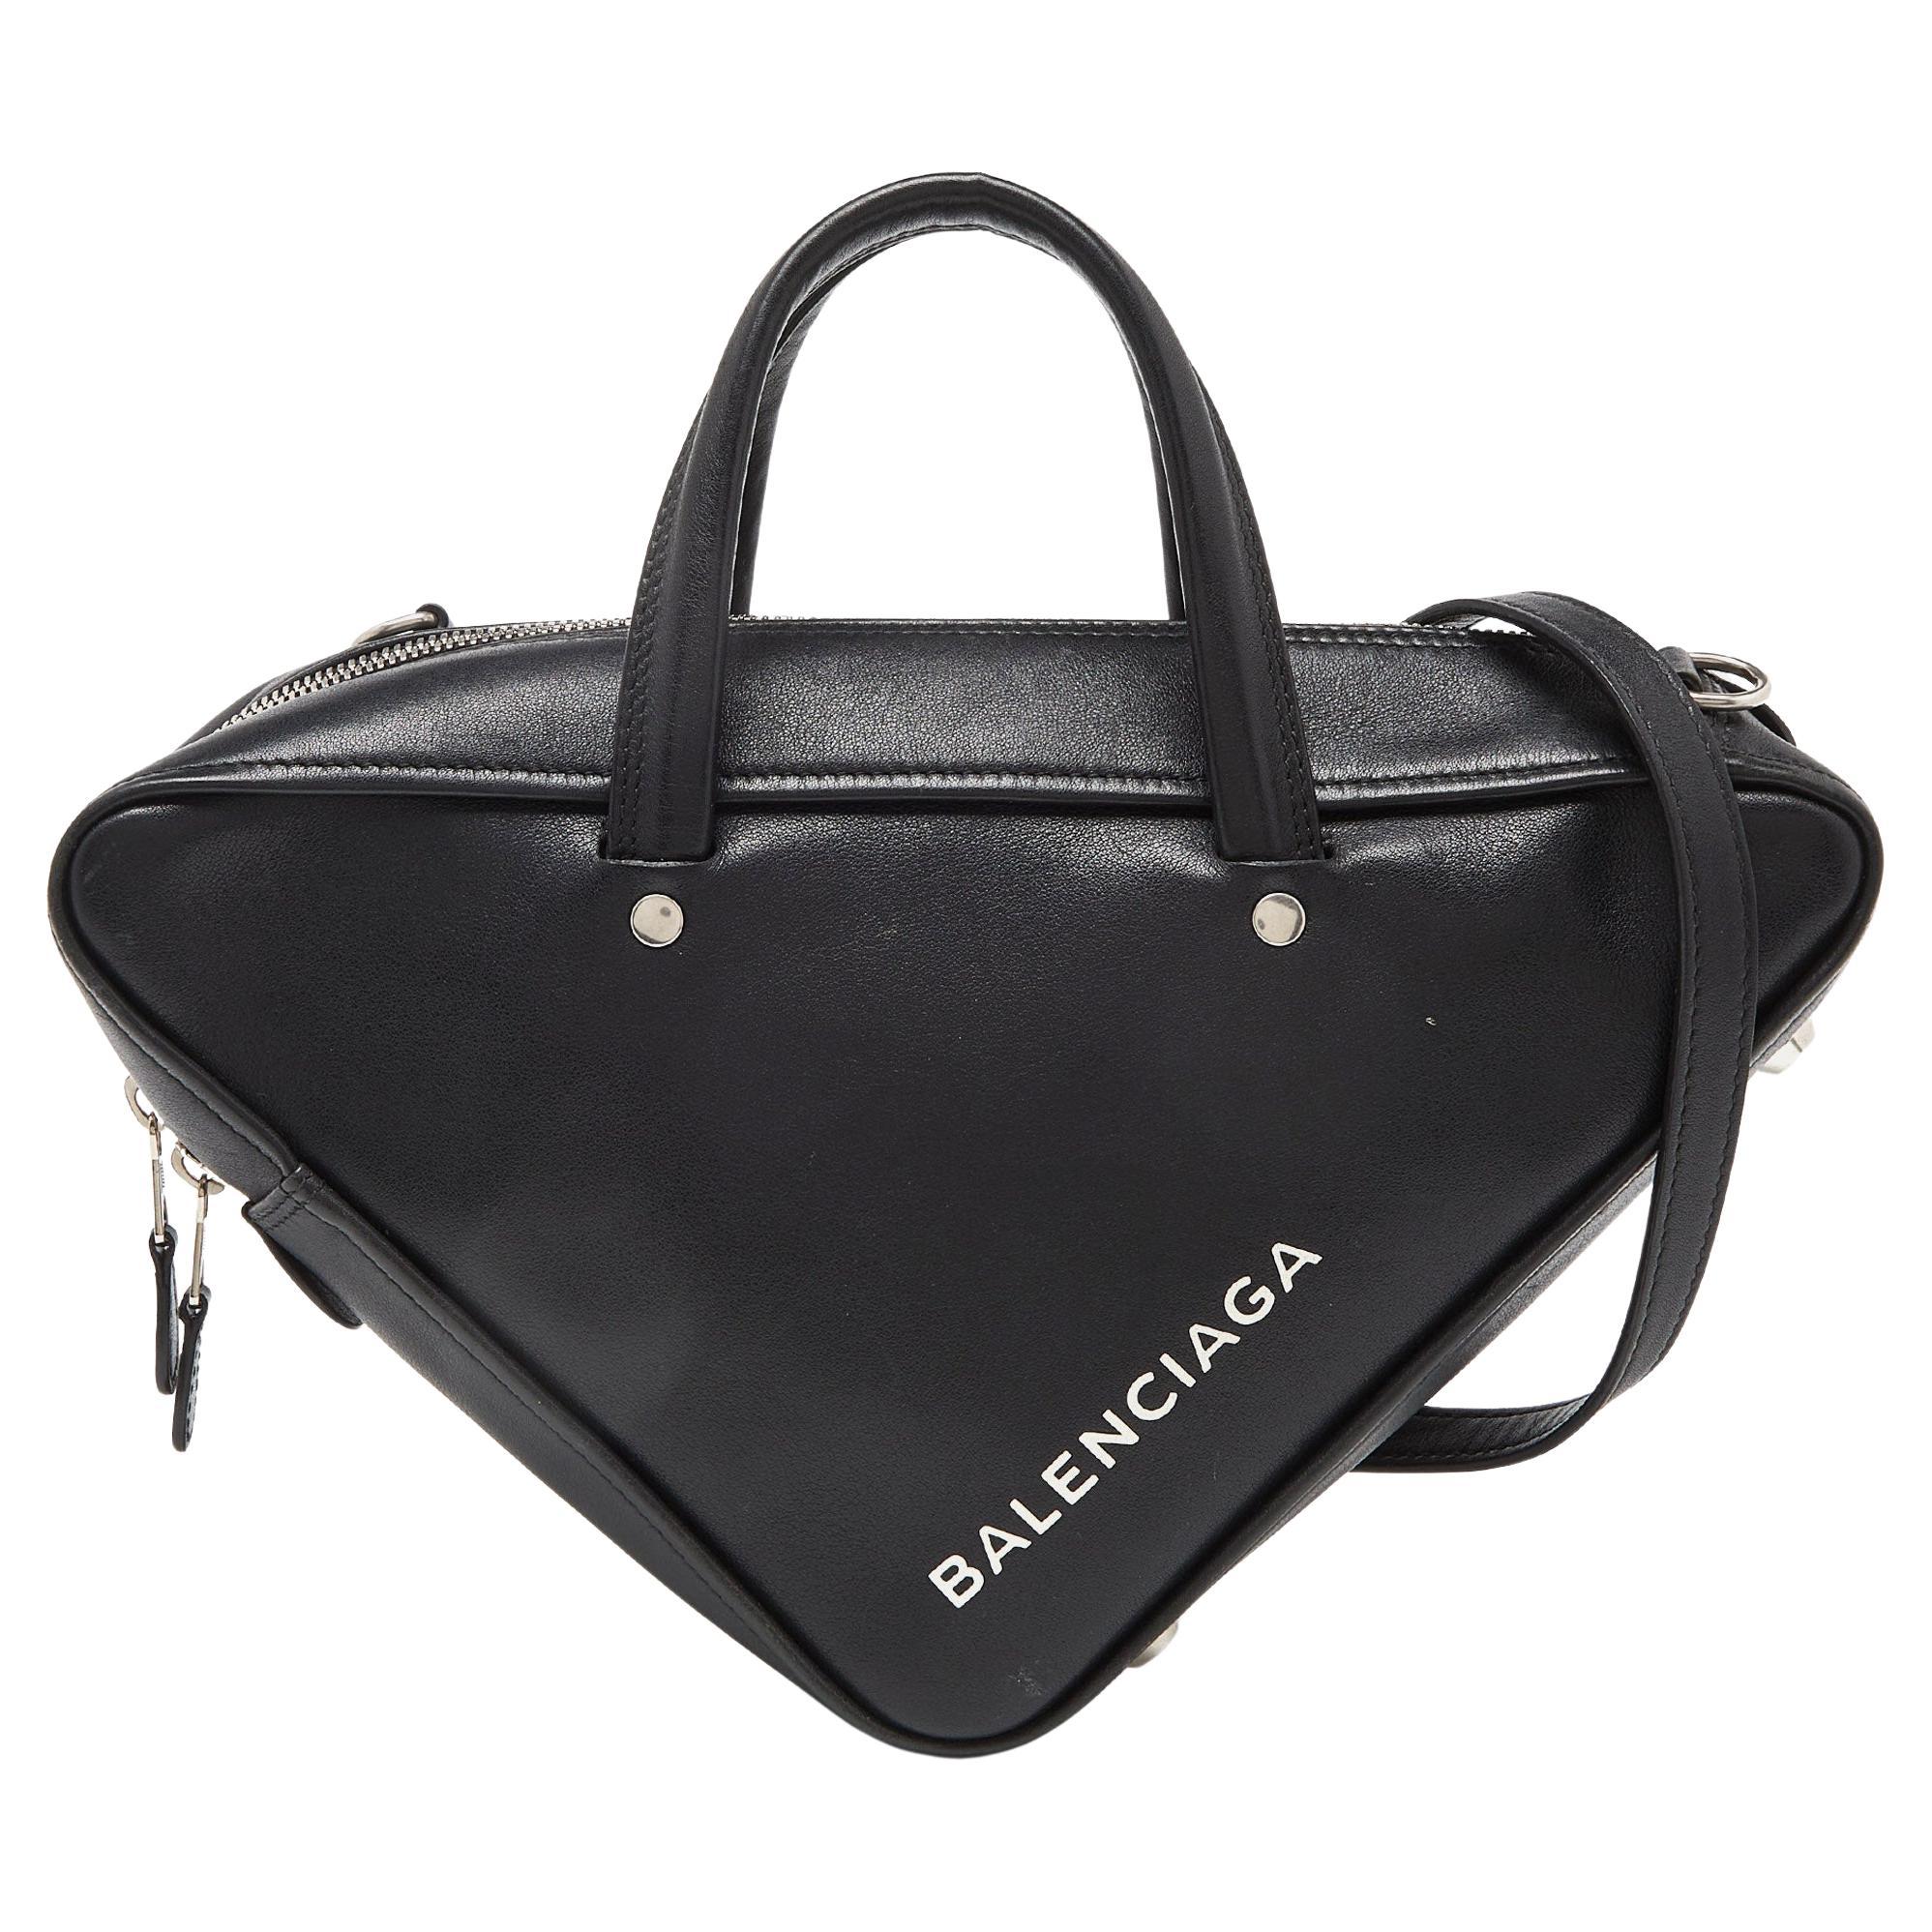 Balenciaga Black Leather Small Triangle Duffle Bag For Sale